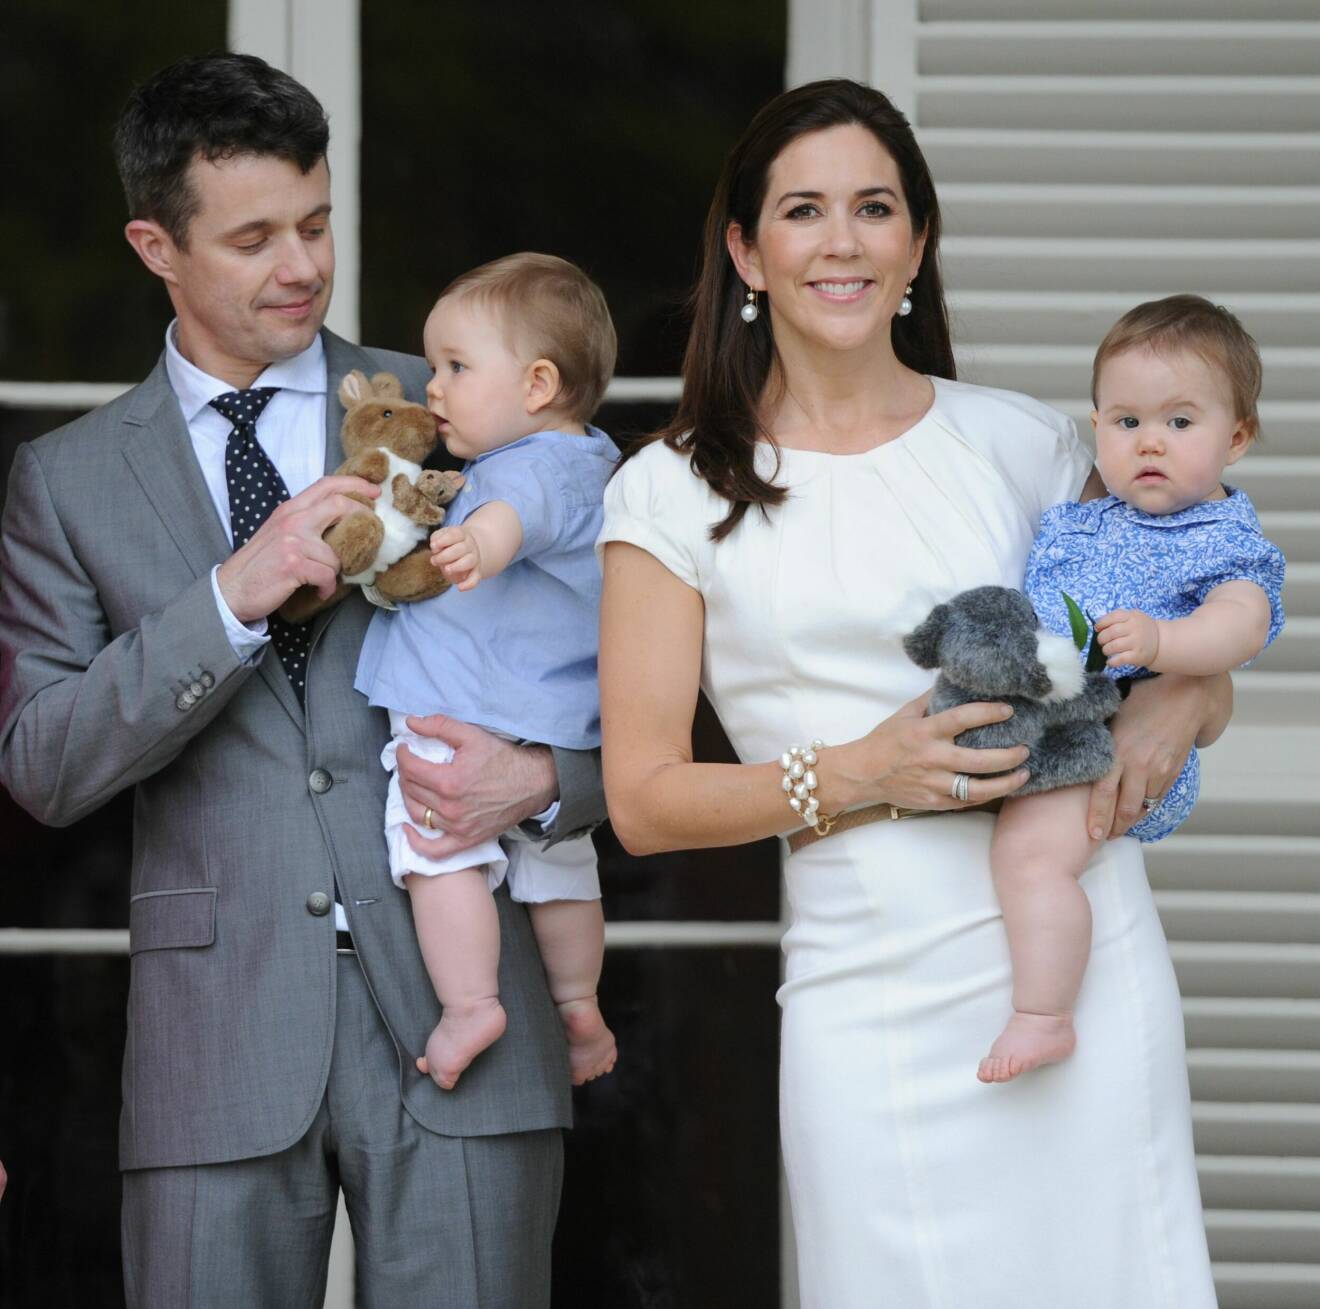 Kronprins Frederik och kronprinsessan Mary med barnen prins Vincent och prinsessan Josephine som bebisar